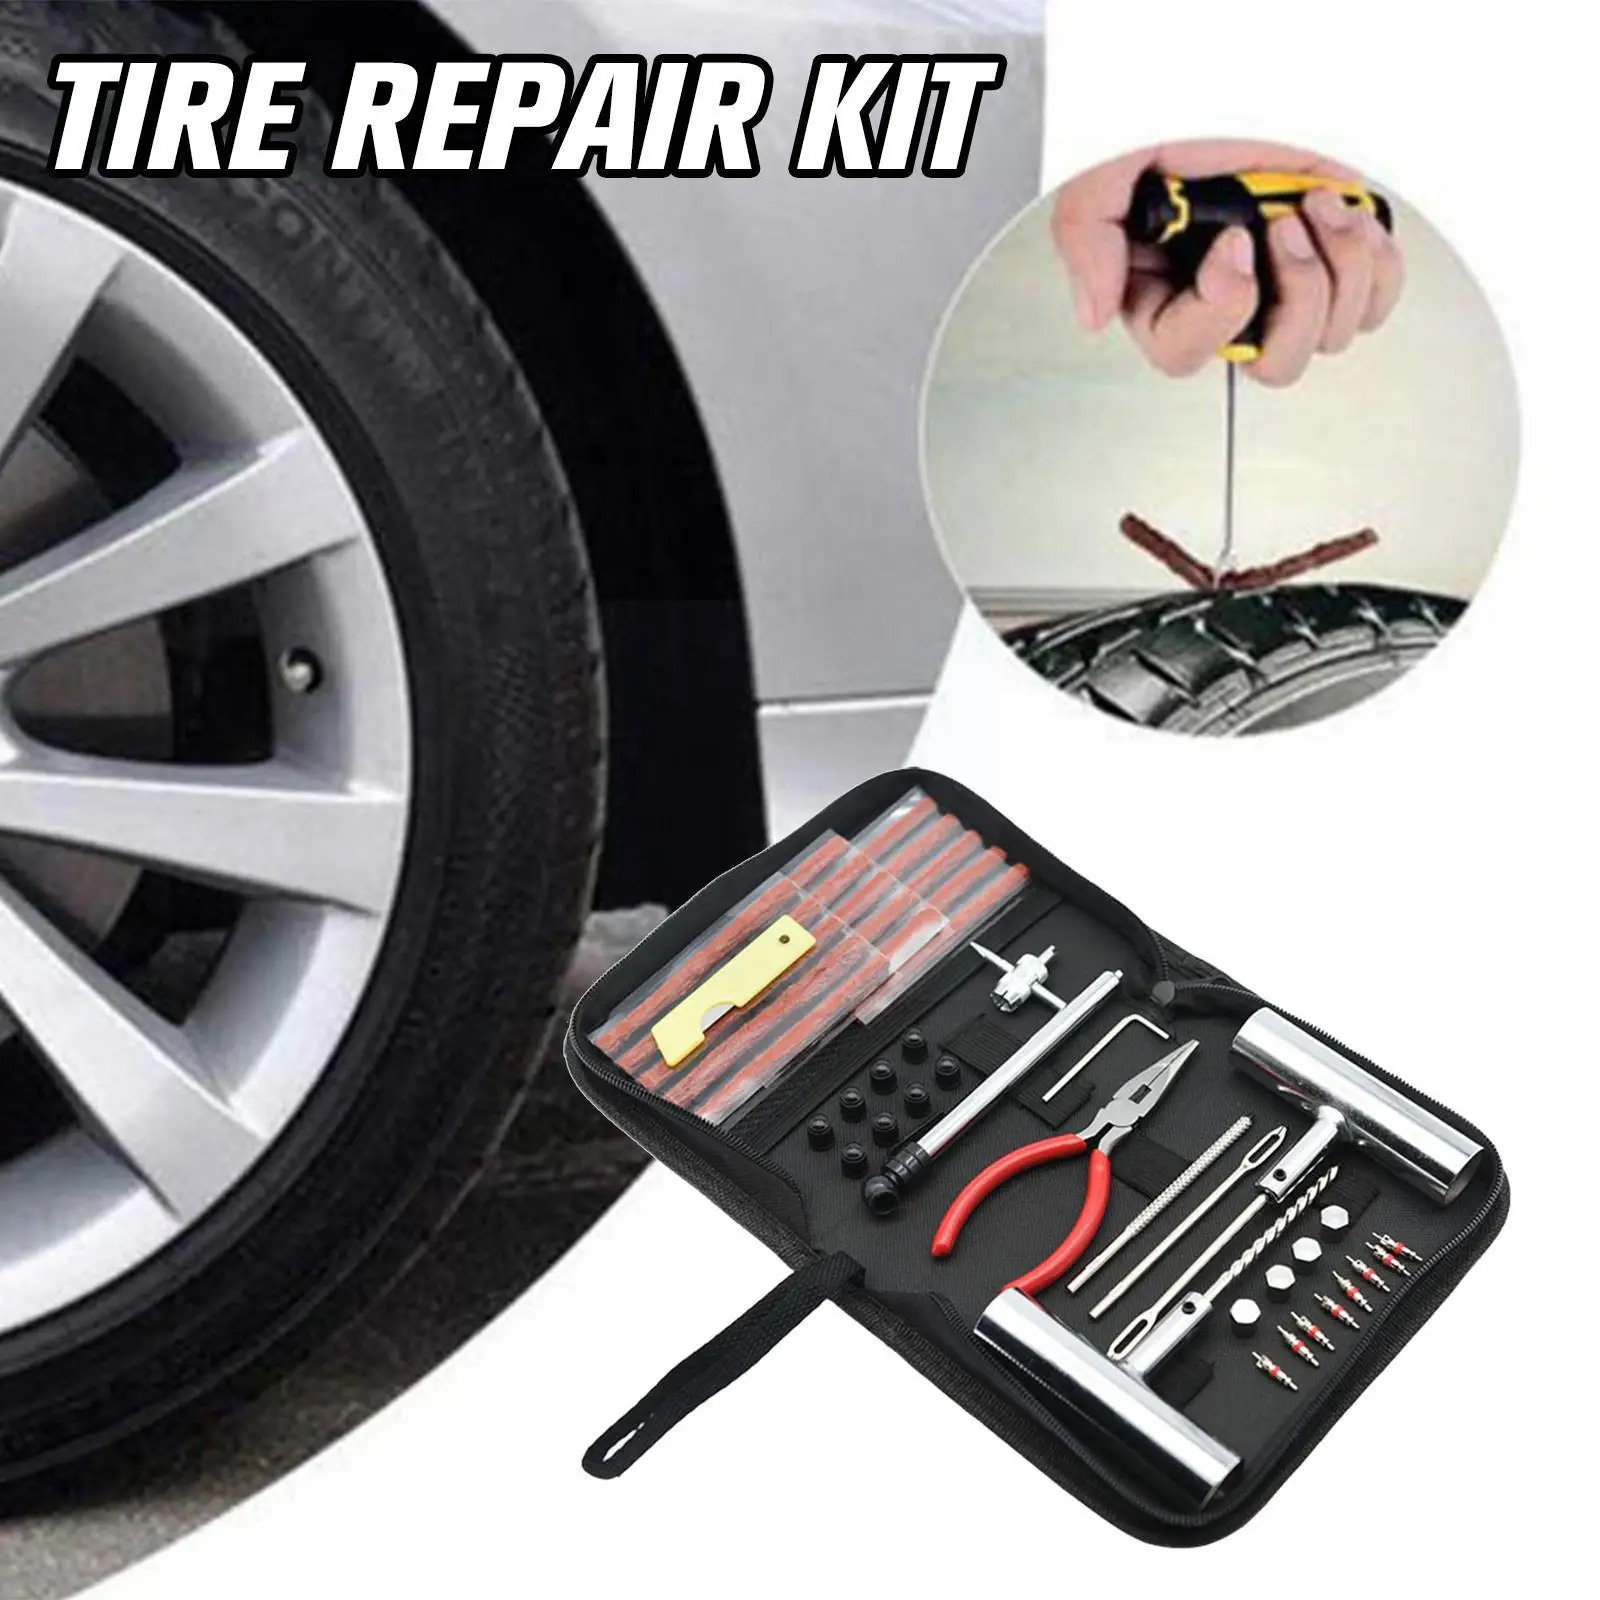 

Motorcycle Anti-puncture Kit 46pcs Flat Tyre Repair Patch Tires Tools Tire Repair Automotive Repair Original Tubeless Kit S X6u9